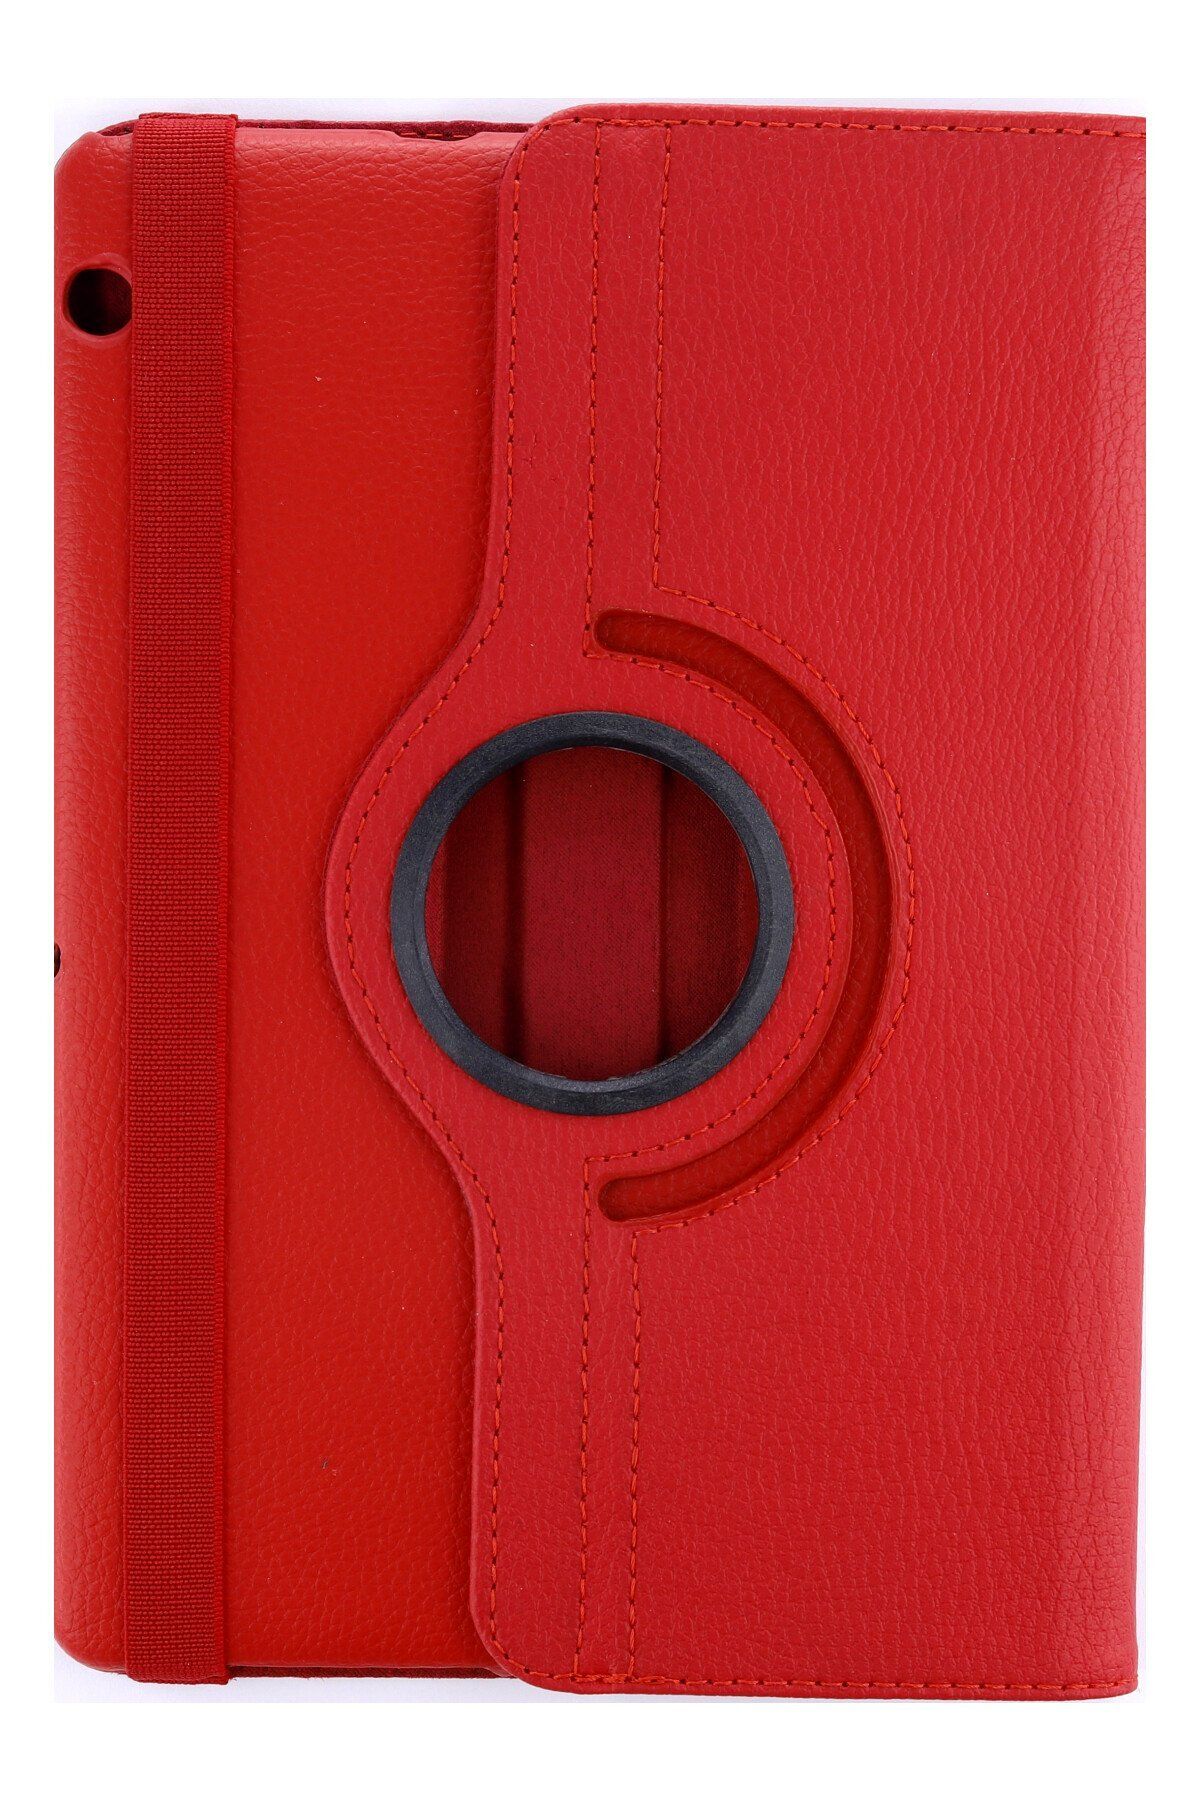 AQUA AKSESUAR Huawei MediaPad T3 10 / 9.6 Uyumlu Kılıf 360 Dönerli Deri Korumalı Tablet Kılıfı - Kırmızı